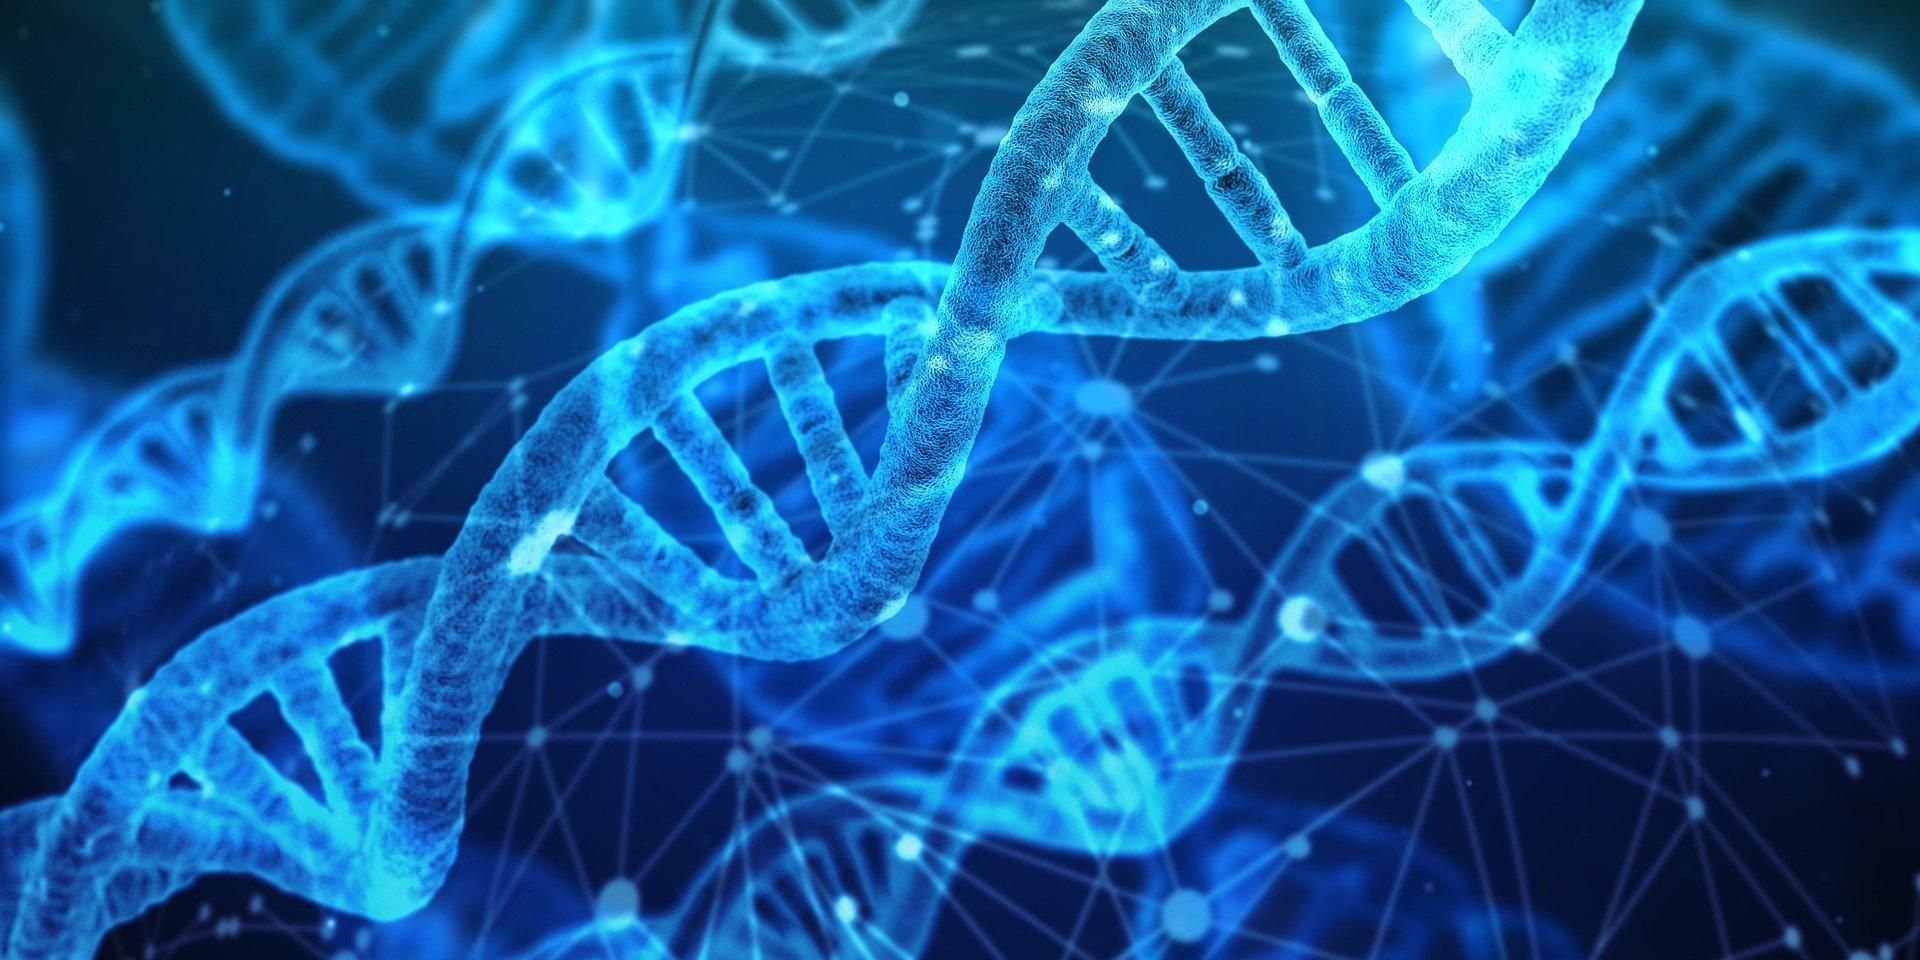 Ученые впервые собрали ДНК из воздуха